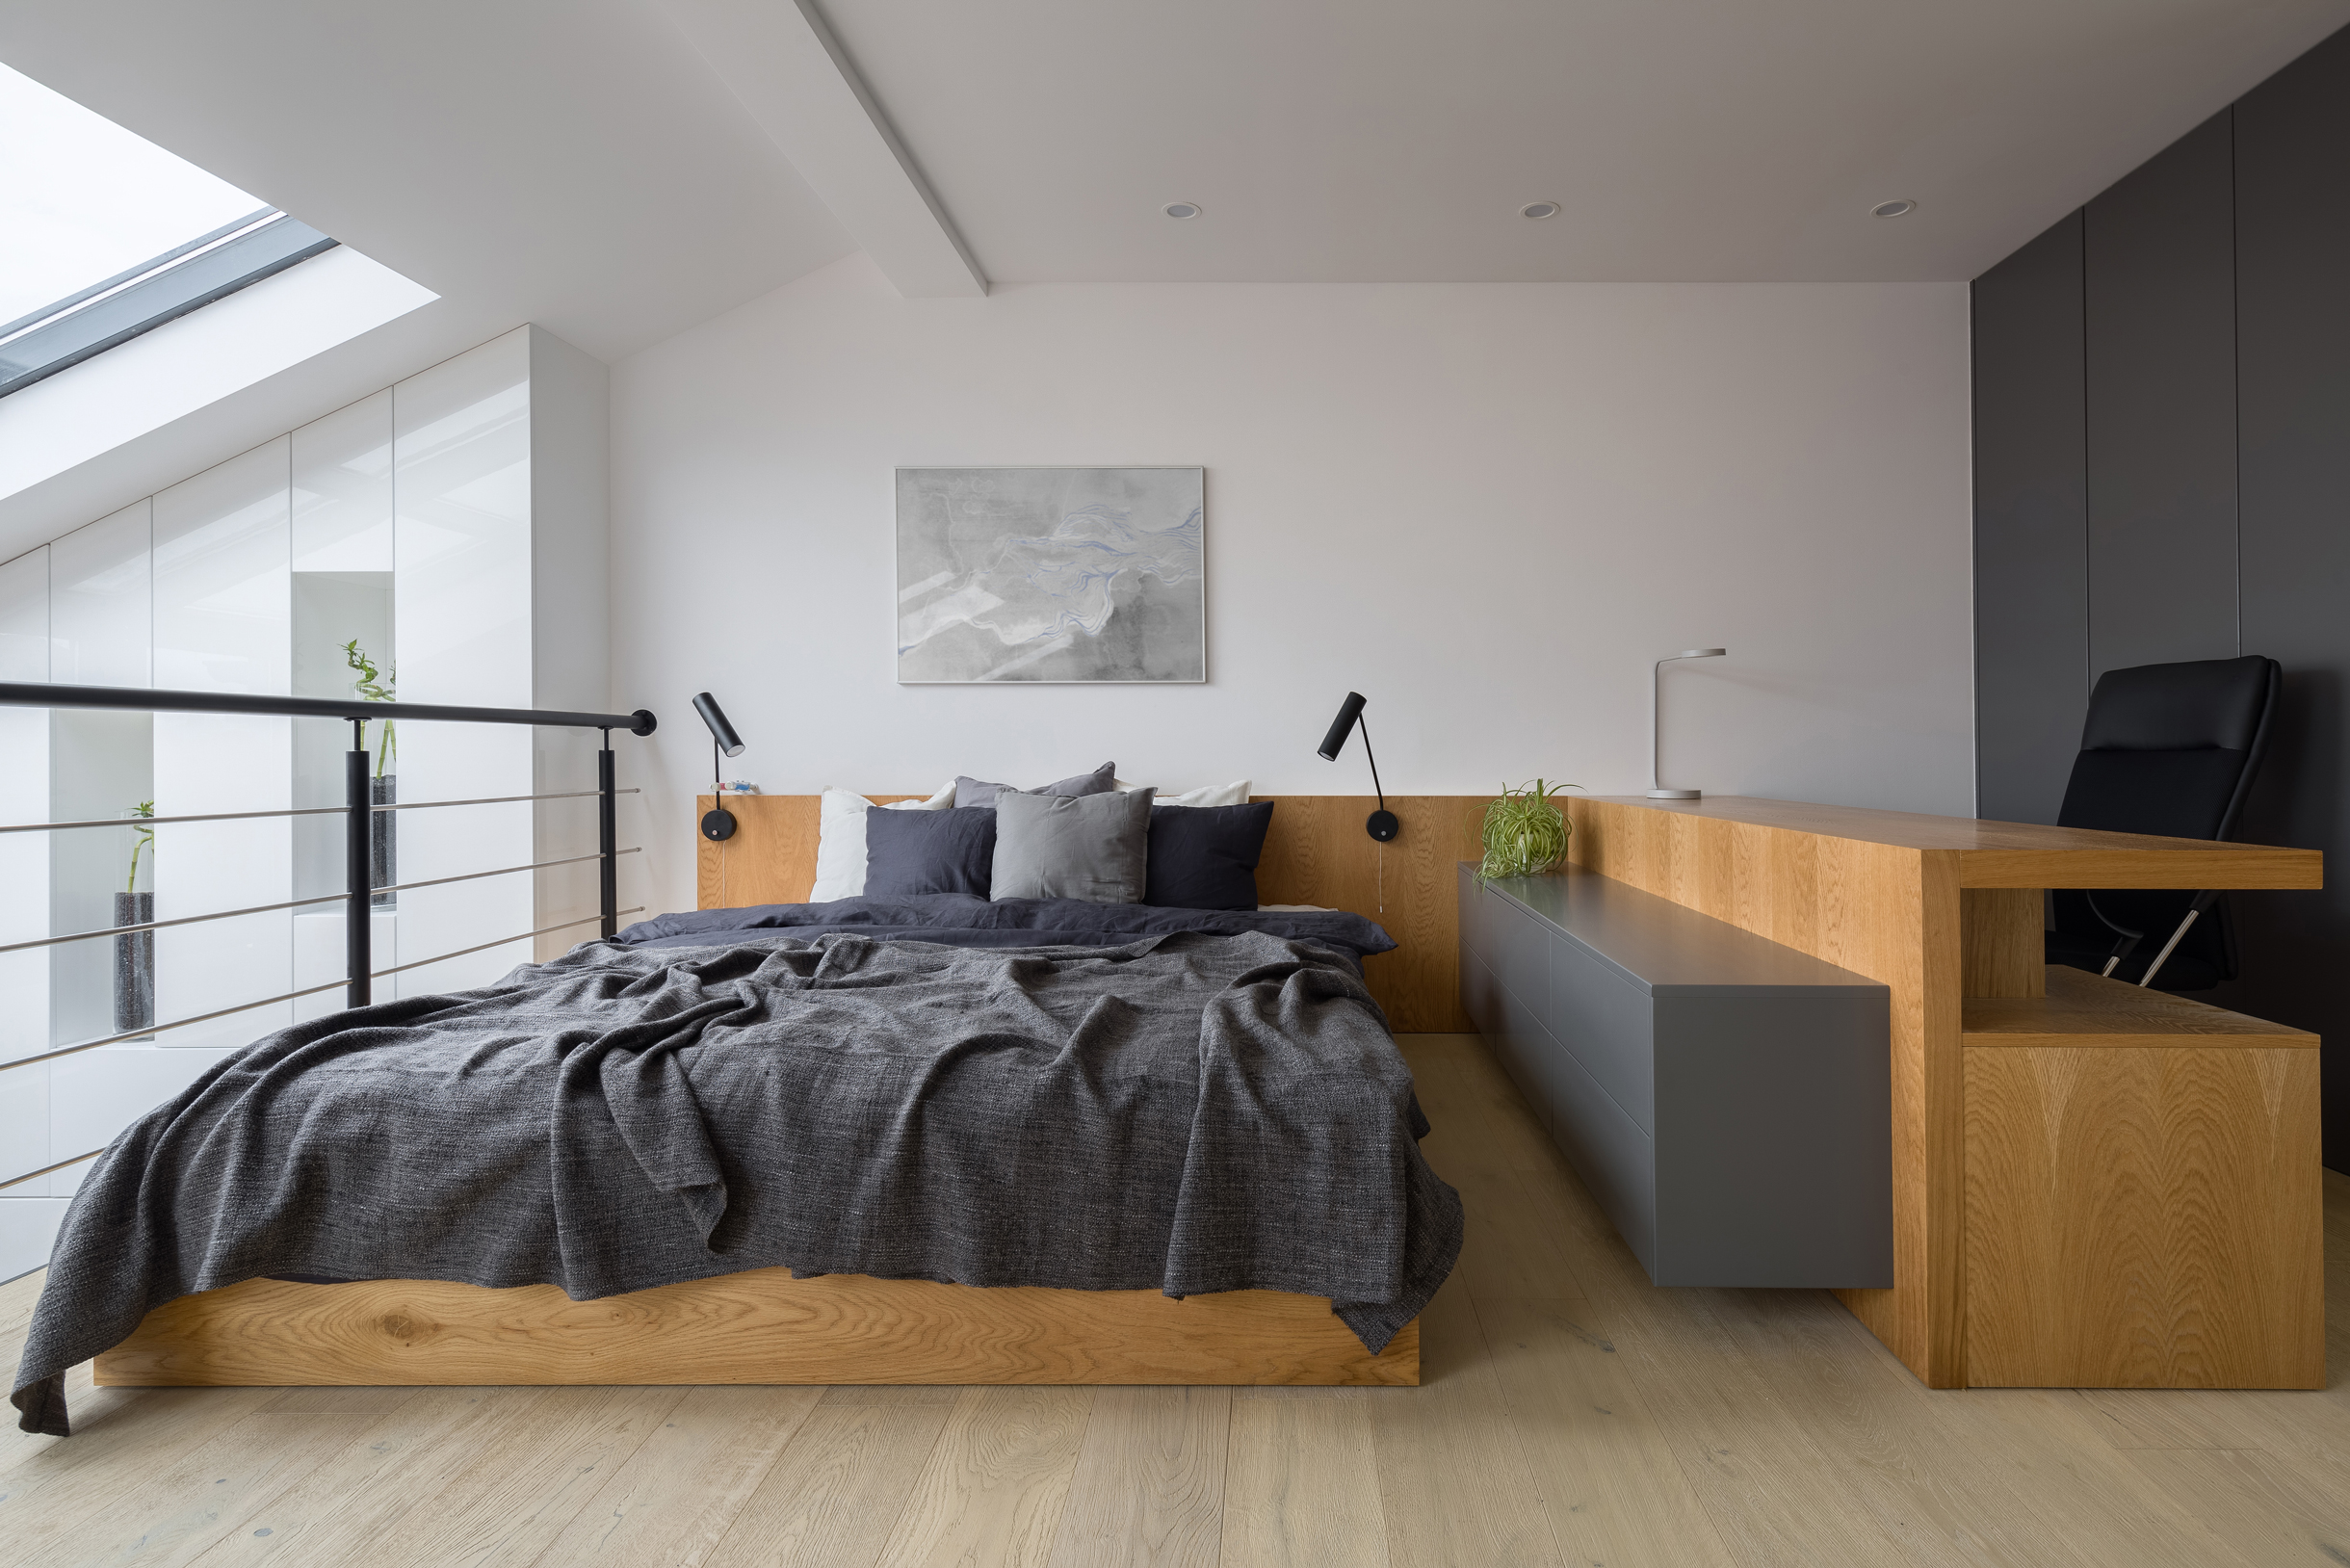 Еще одна спальня в индустриальном стиле: простые формы, дерево, сдержанная цветовая палитра. Фотография: Dariusz Jarzabek / Shutterstock / FOTODOM